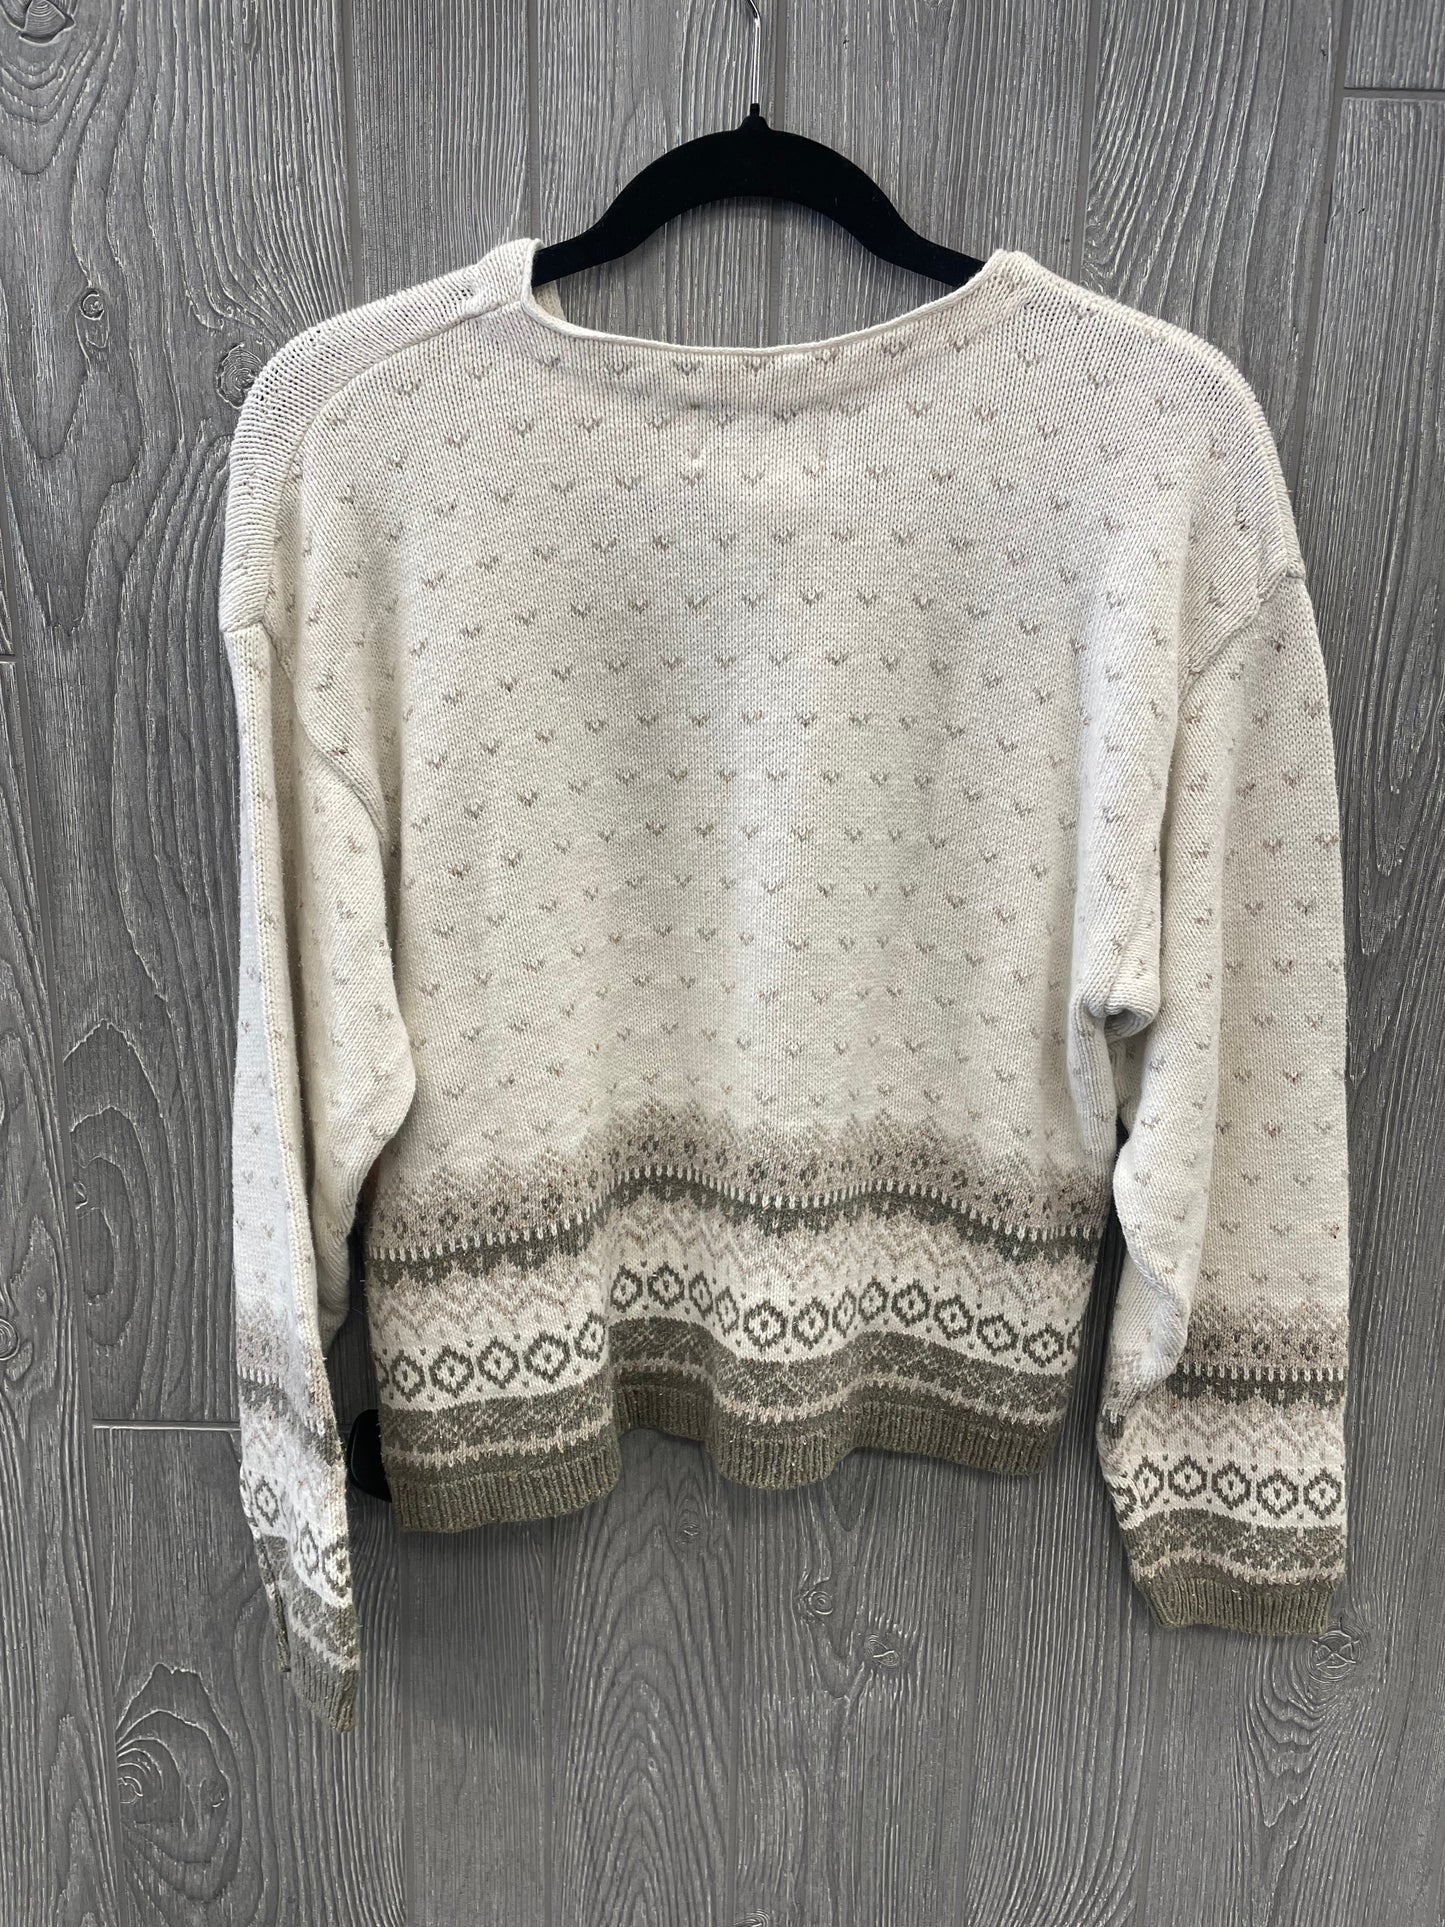 Sweater By Eddie Bauer  Size: L